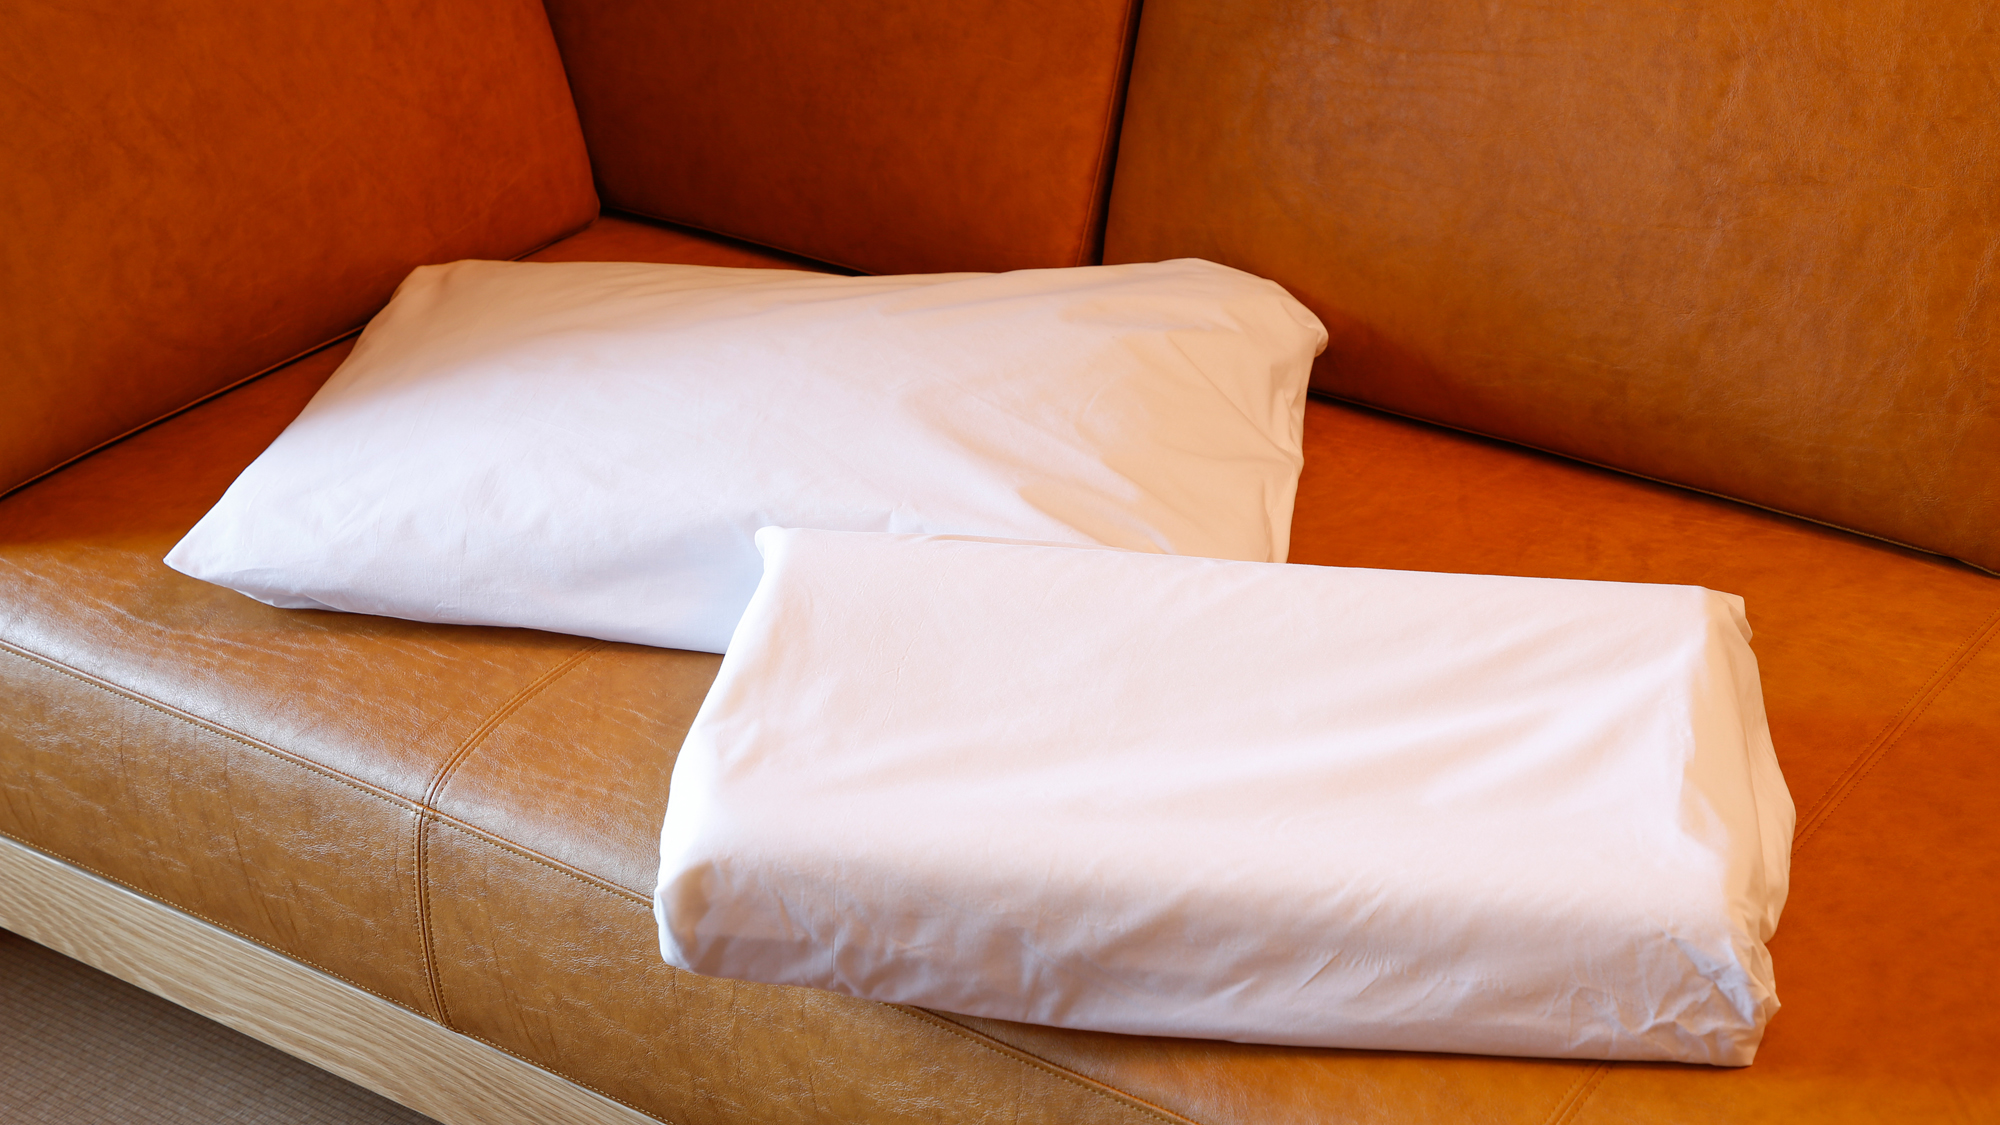 貸出用の低反発枕、そば殻枕。数に限りがございますので、予めご了承ください。